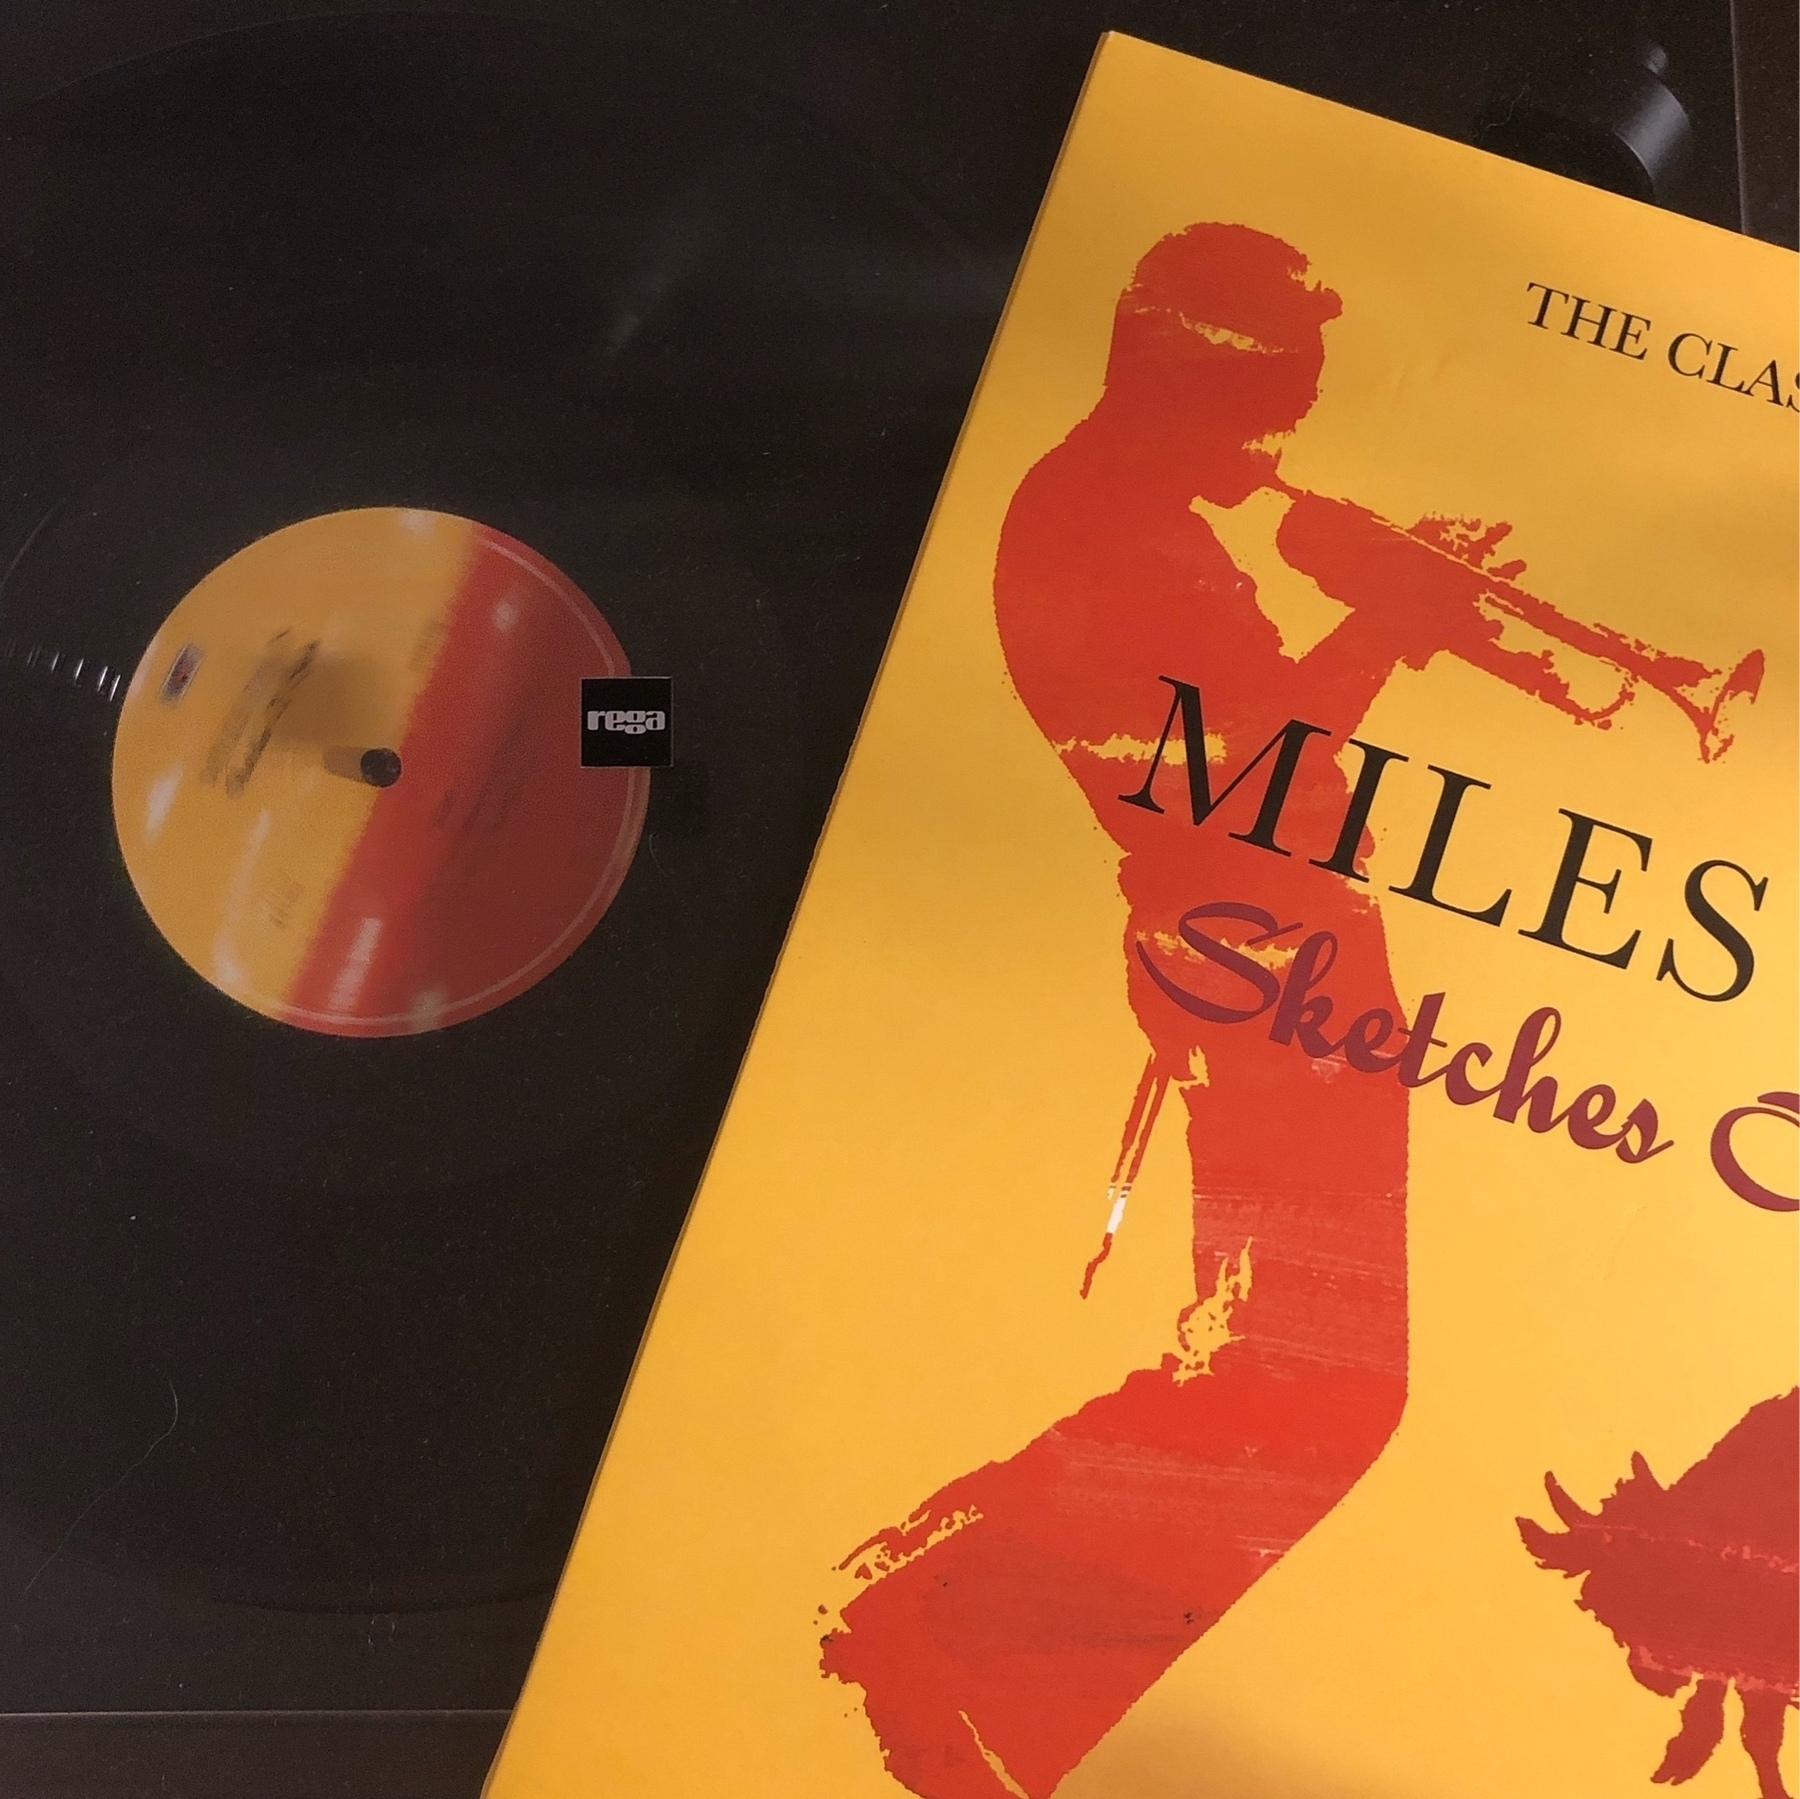 Miles Davis album overlapping my Rega turntable